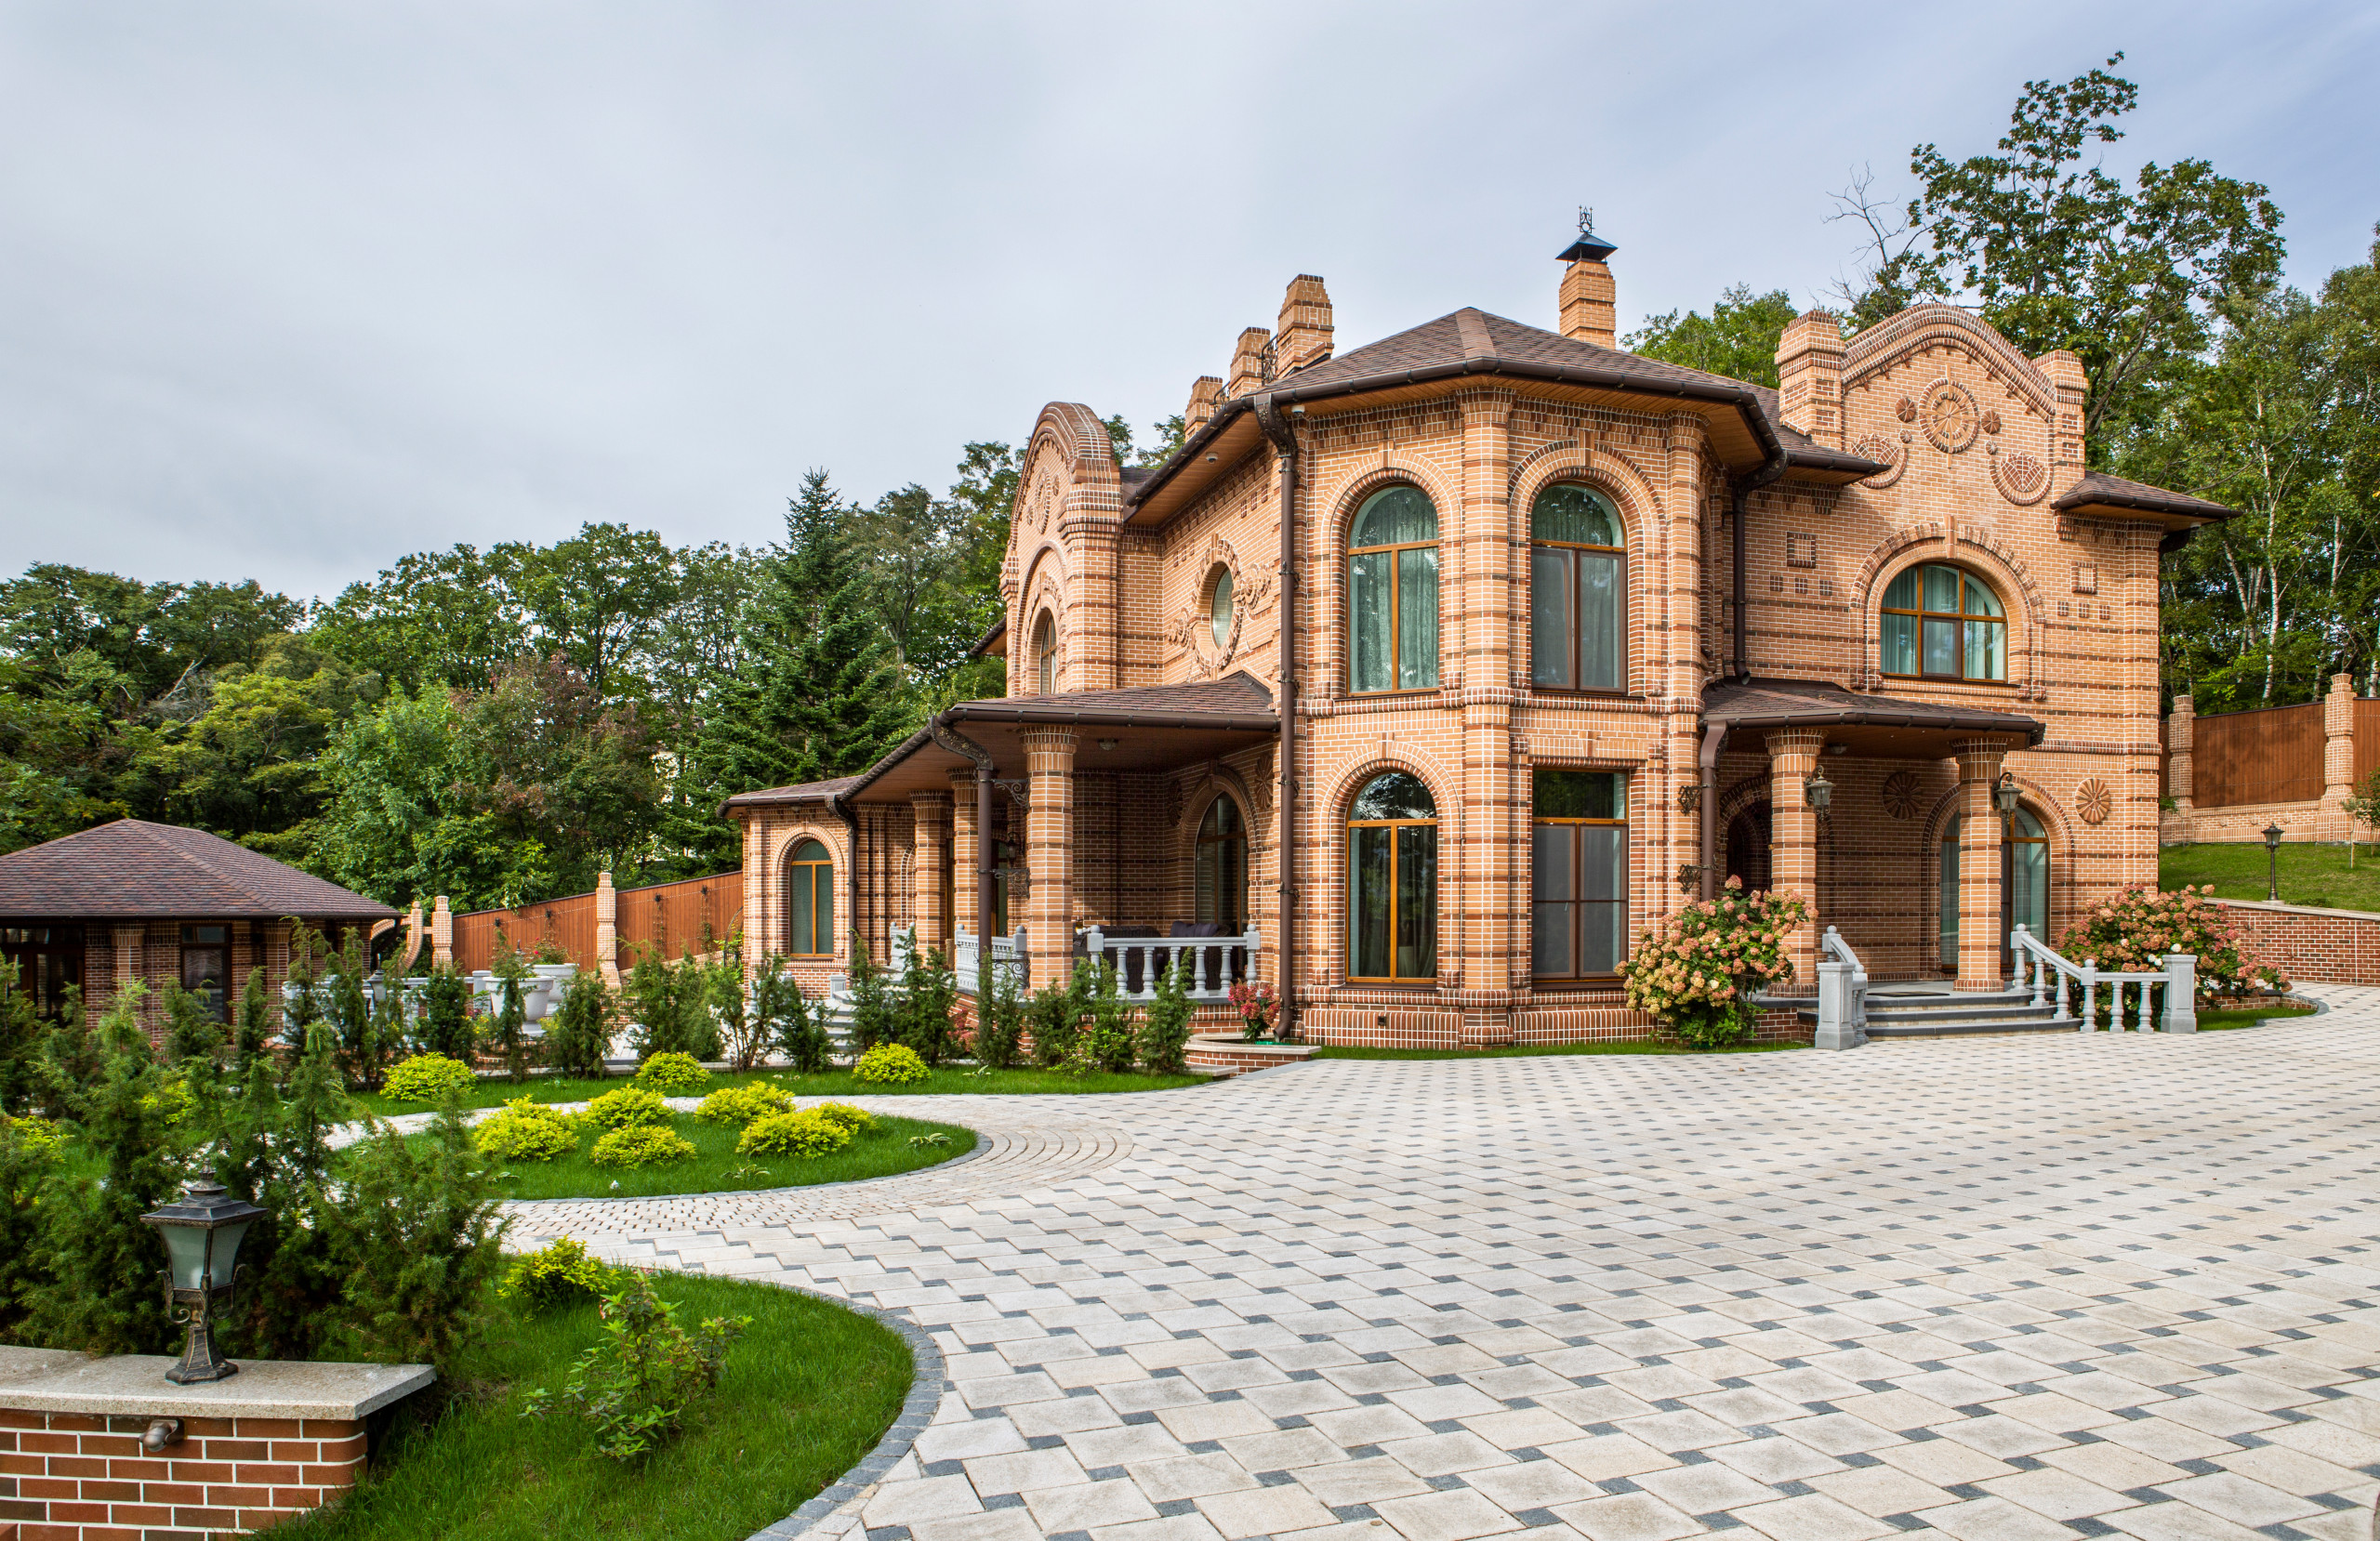 Чертежи для стройки дома в стиле русской готики